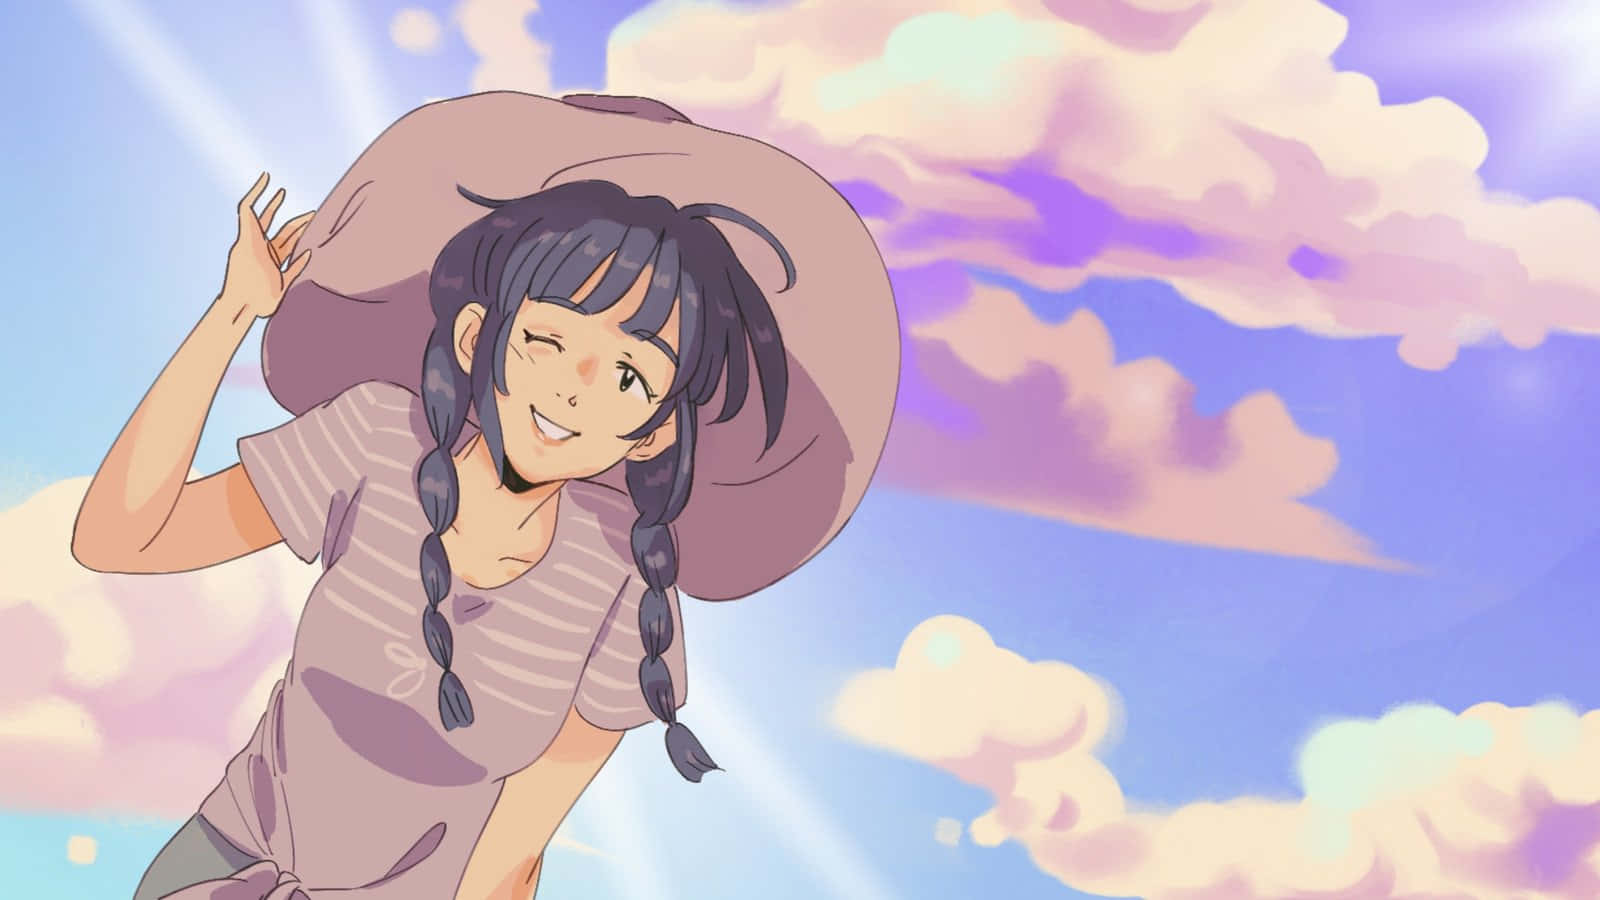 Retro Anime Girl Summer Breeze.jpg Wallpaper